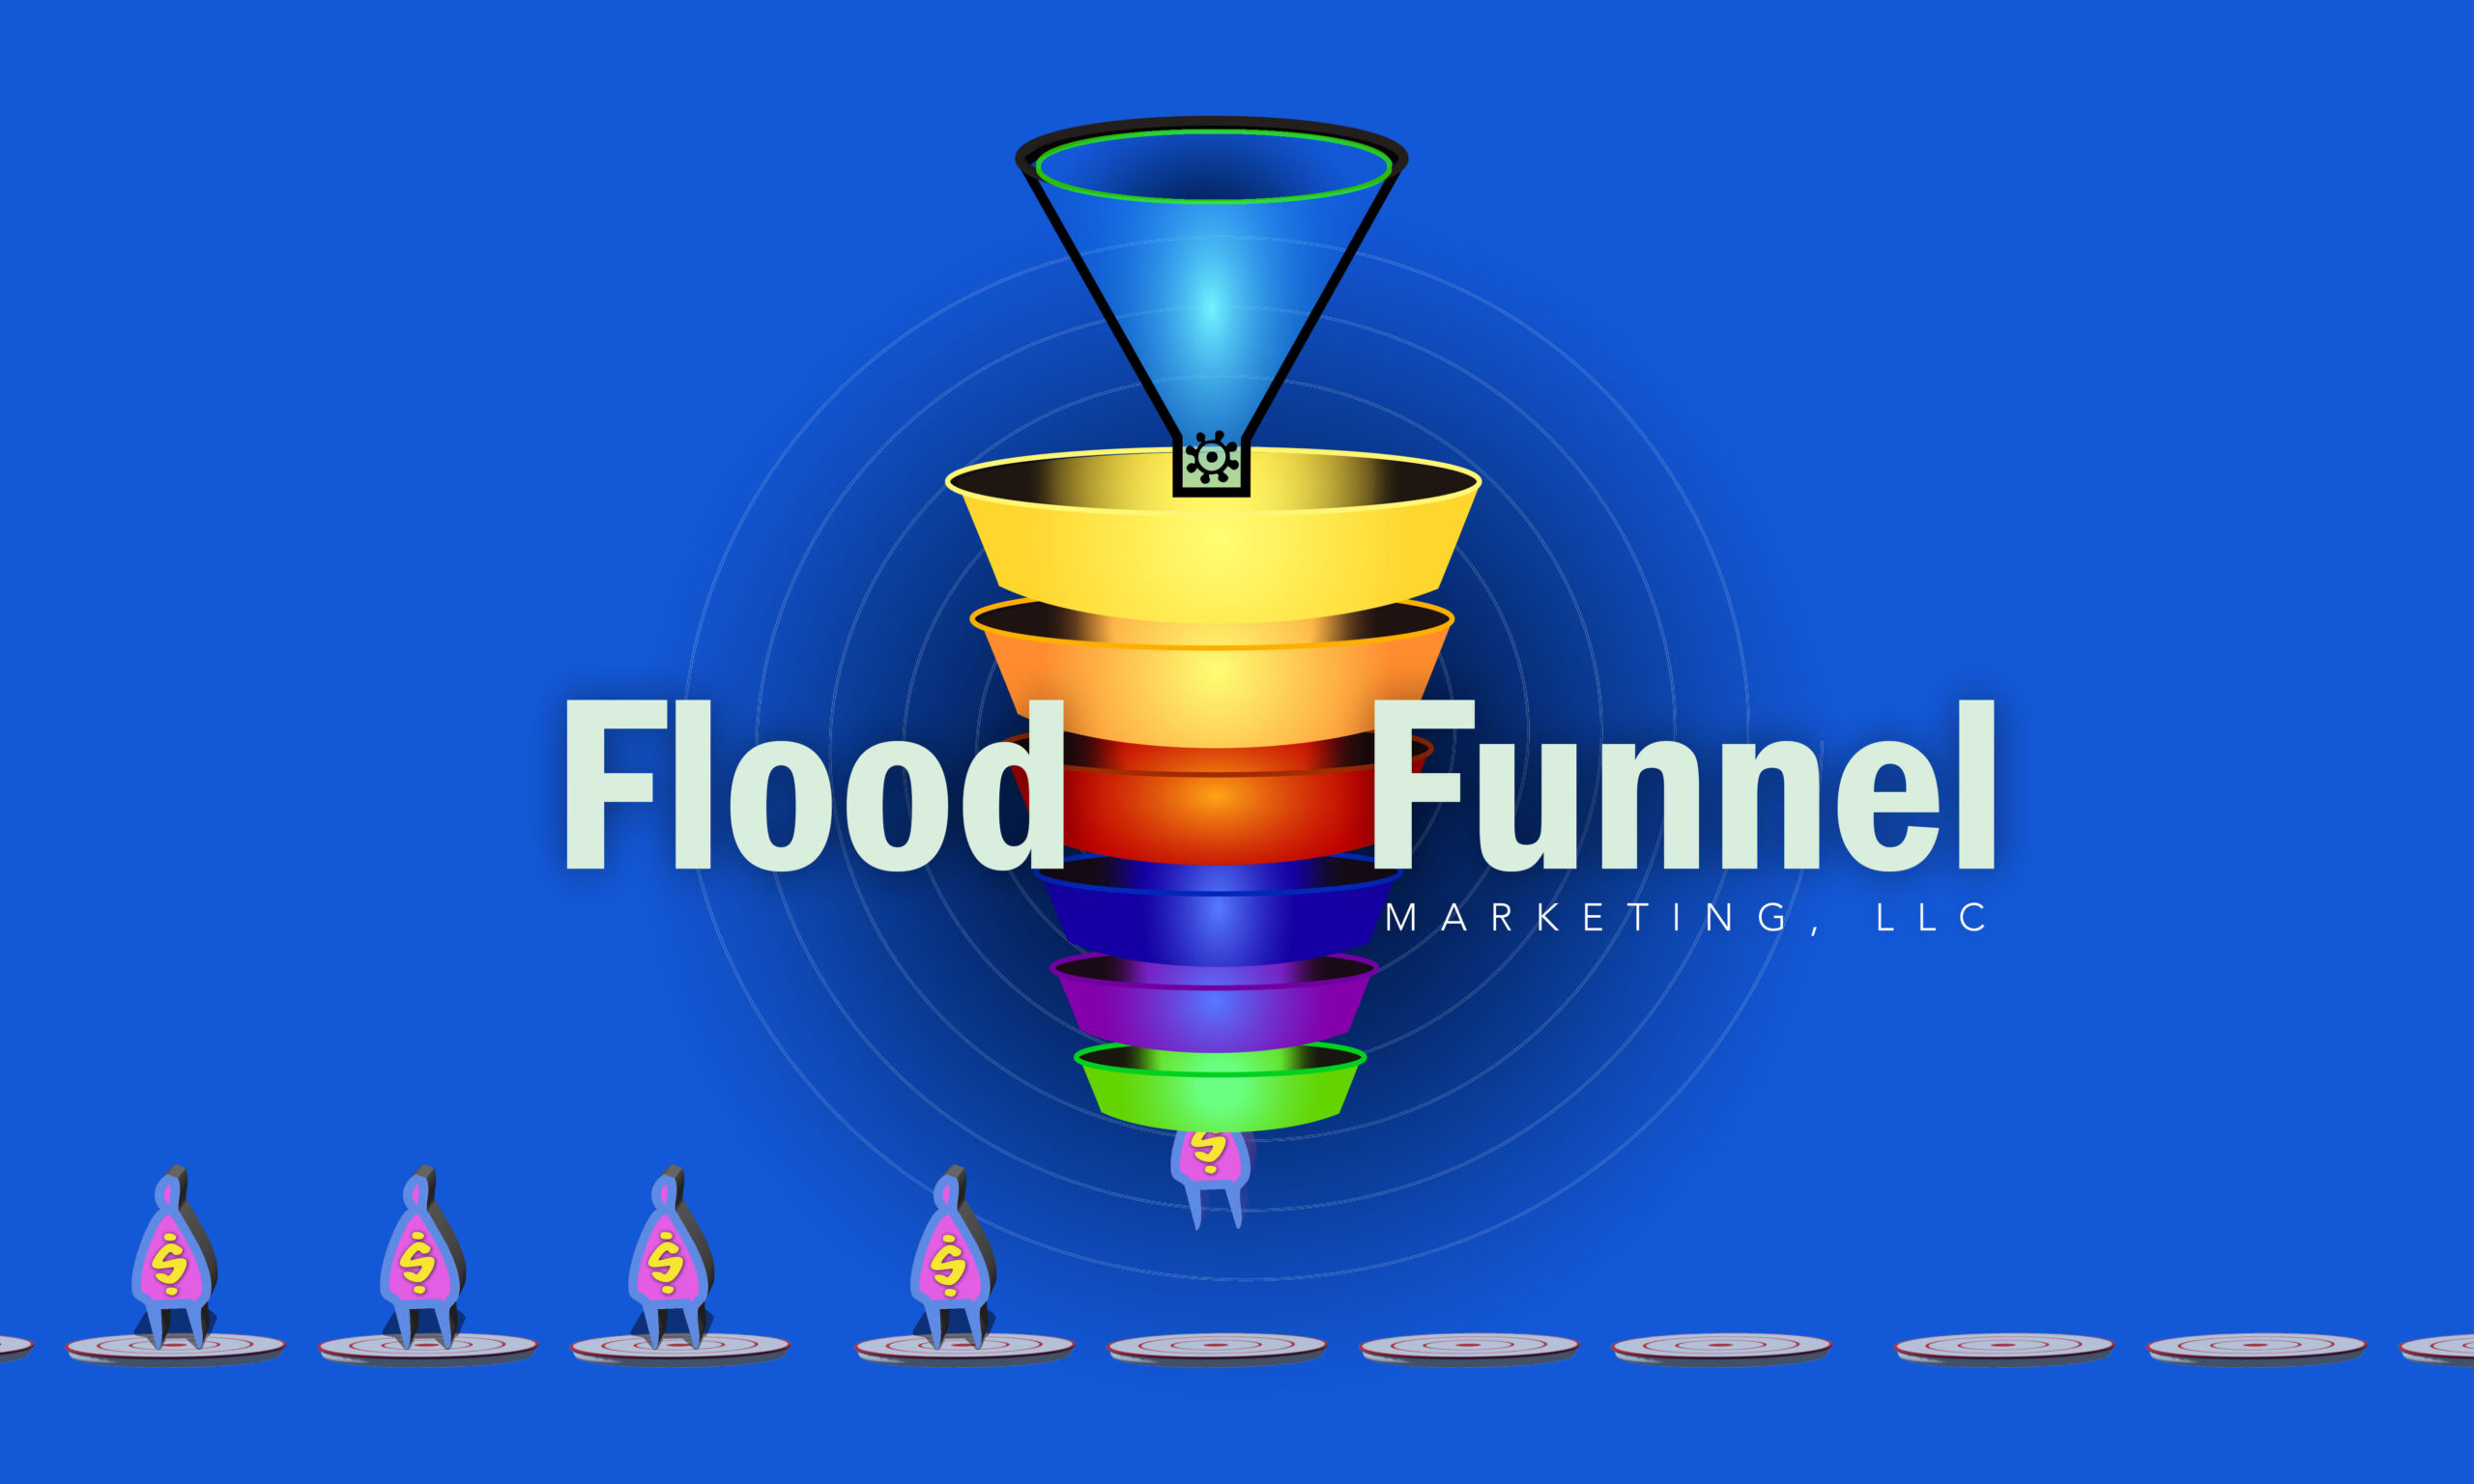 Flood Funnel Marketing